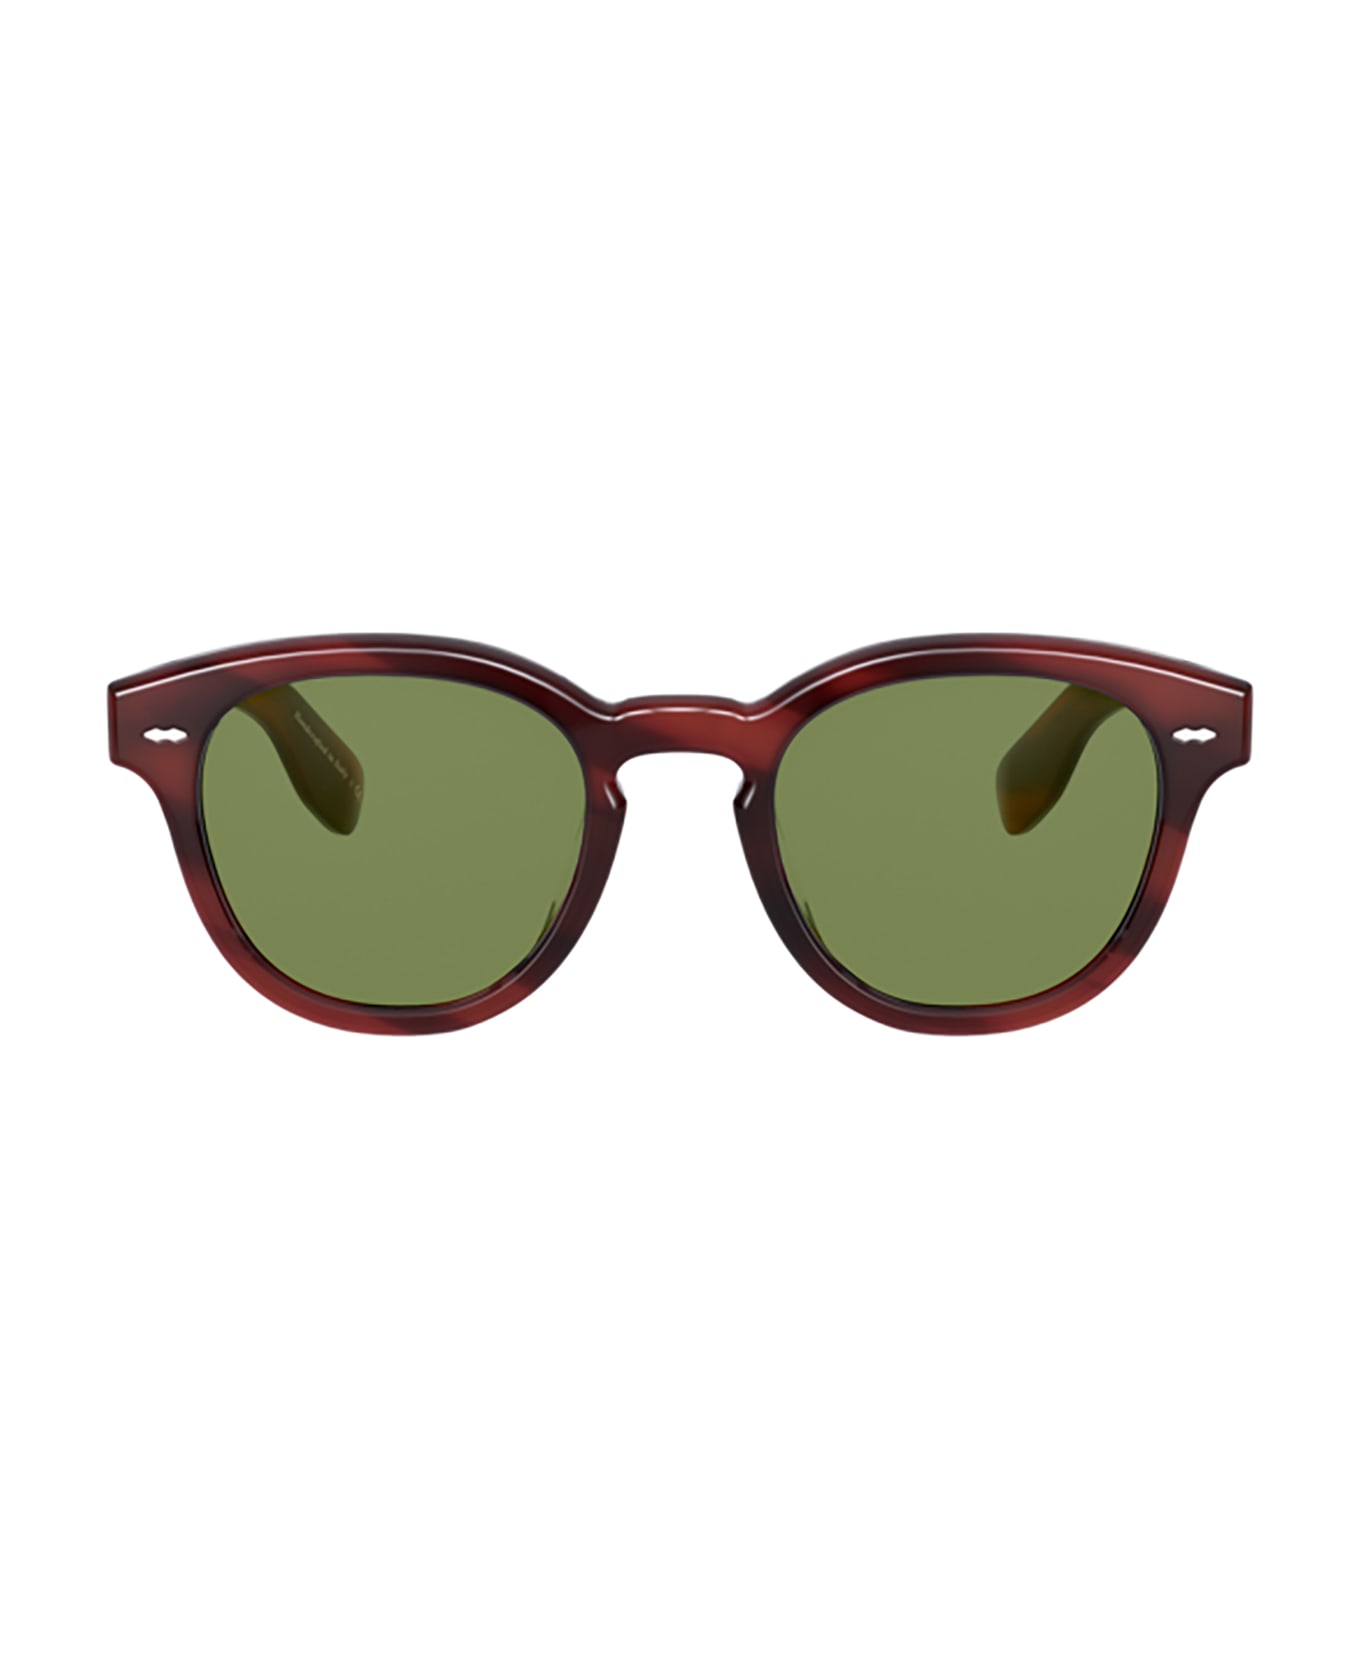 Oliver Peoples Ov5413su Grant Tortoise Sunglasses - Grant Tortoise サングラス